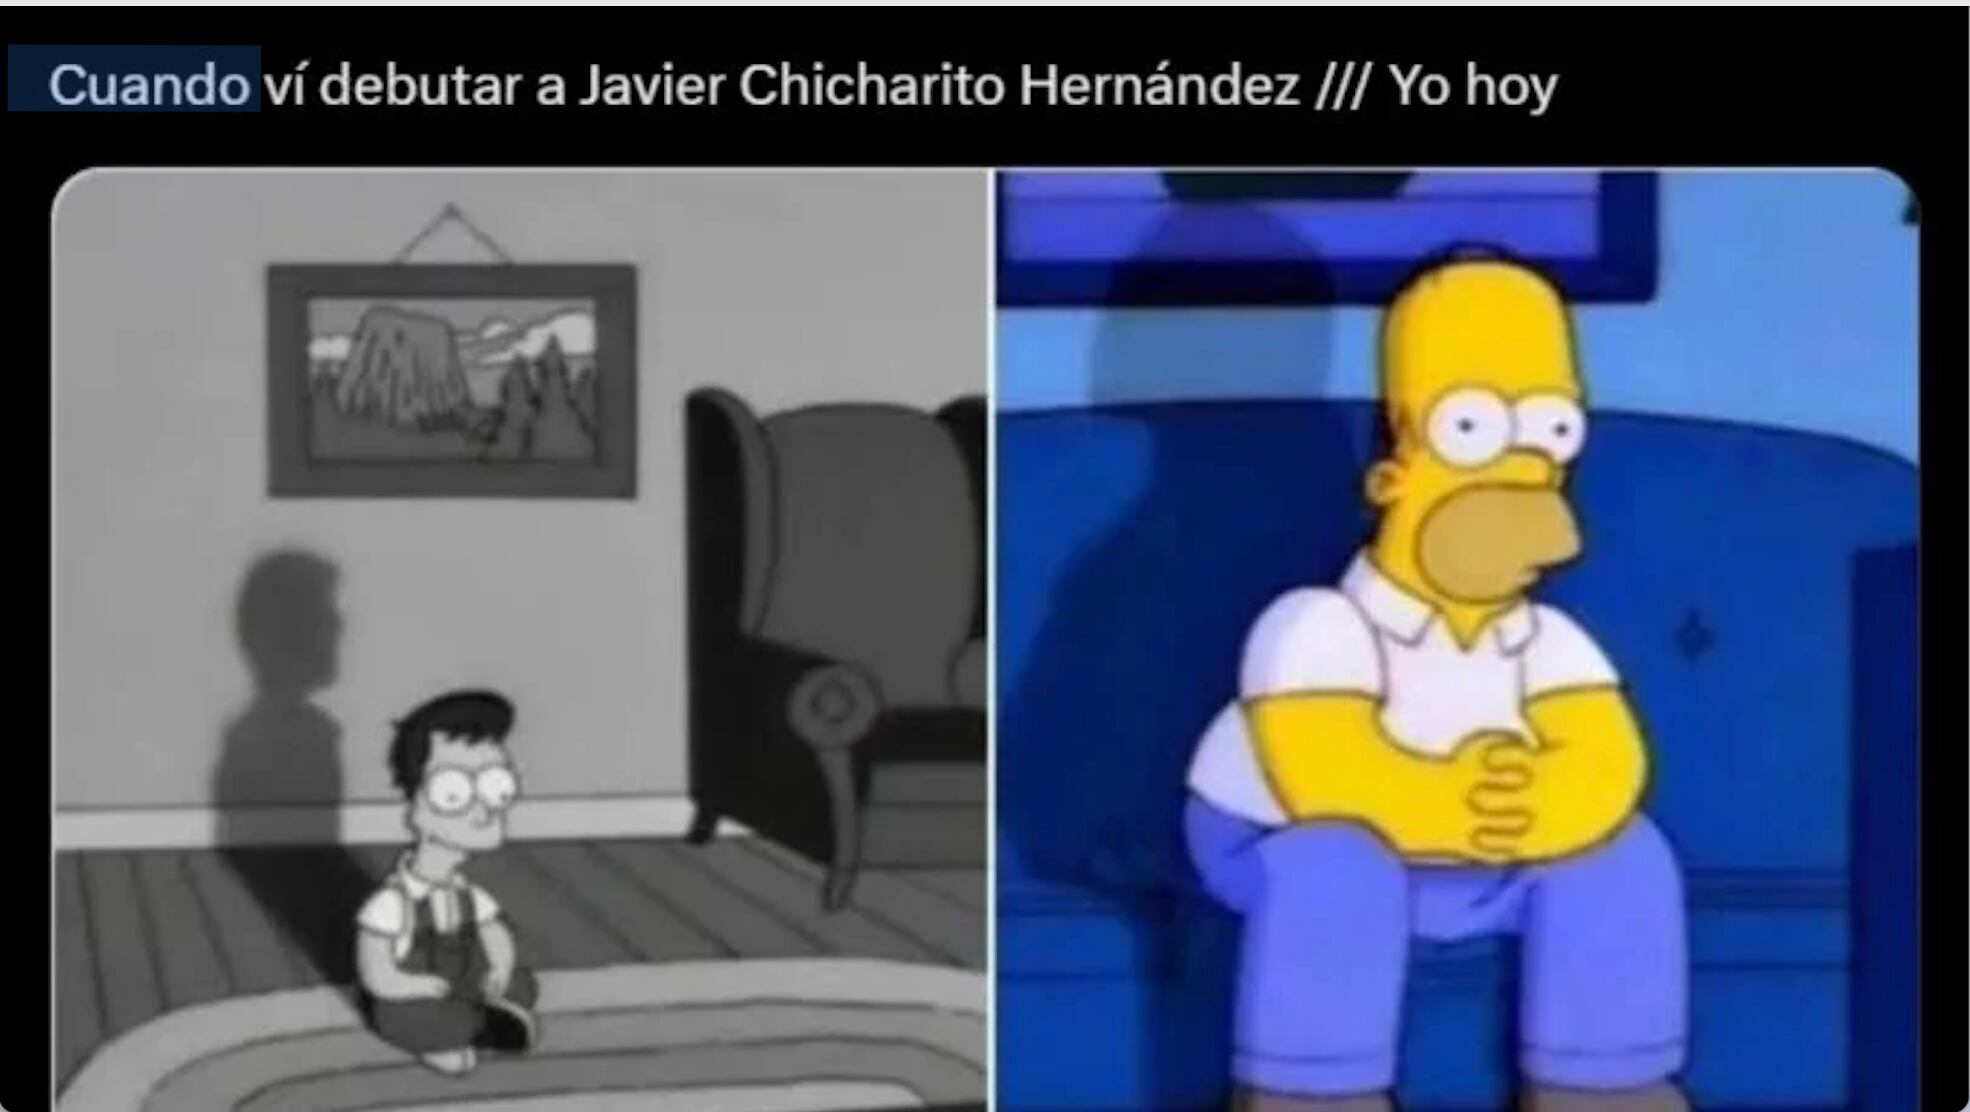 Chicharito regresó a Chivas después de 14 años.